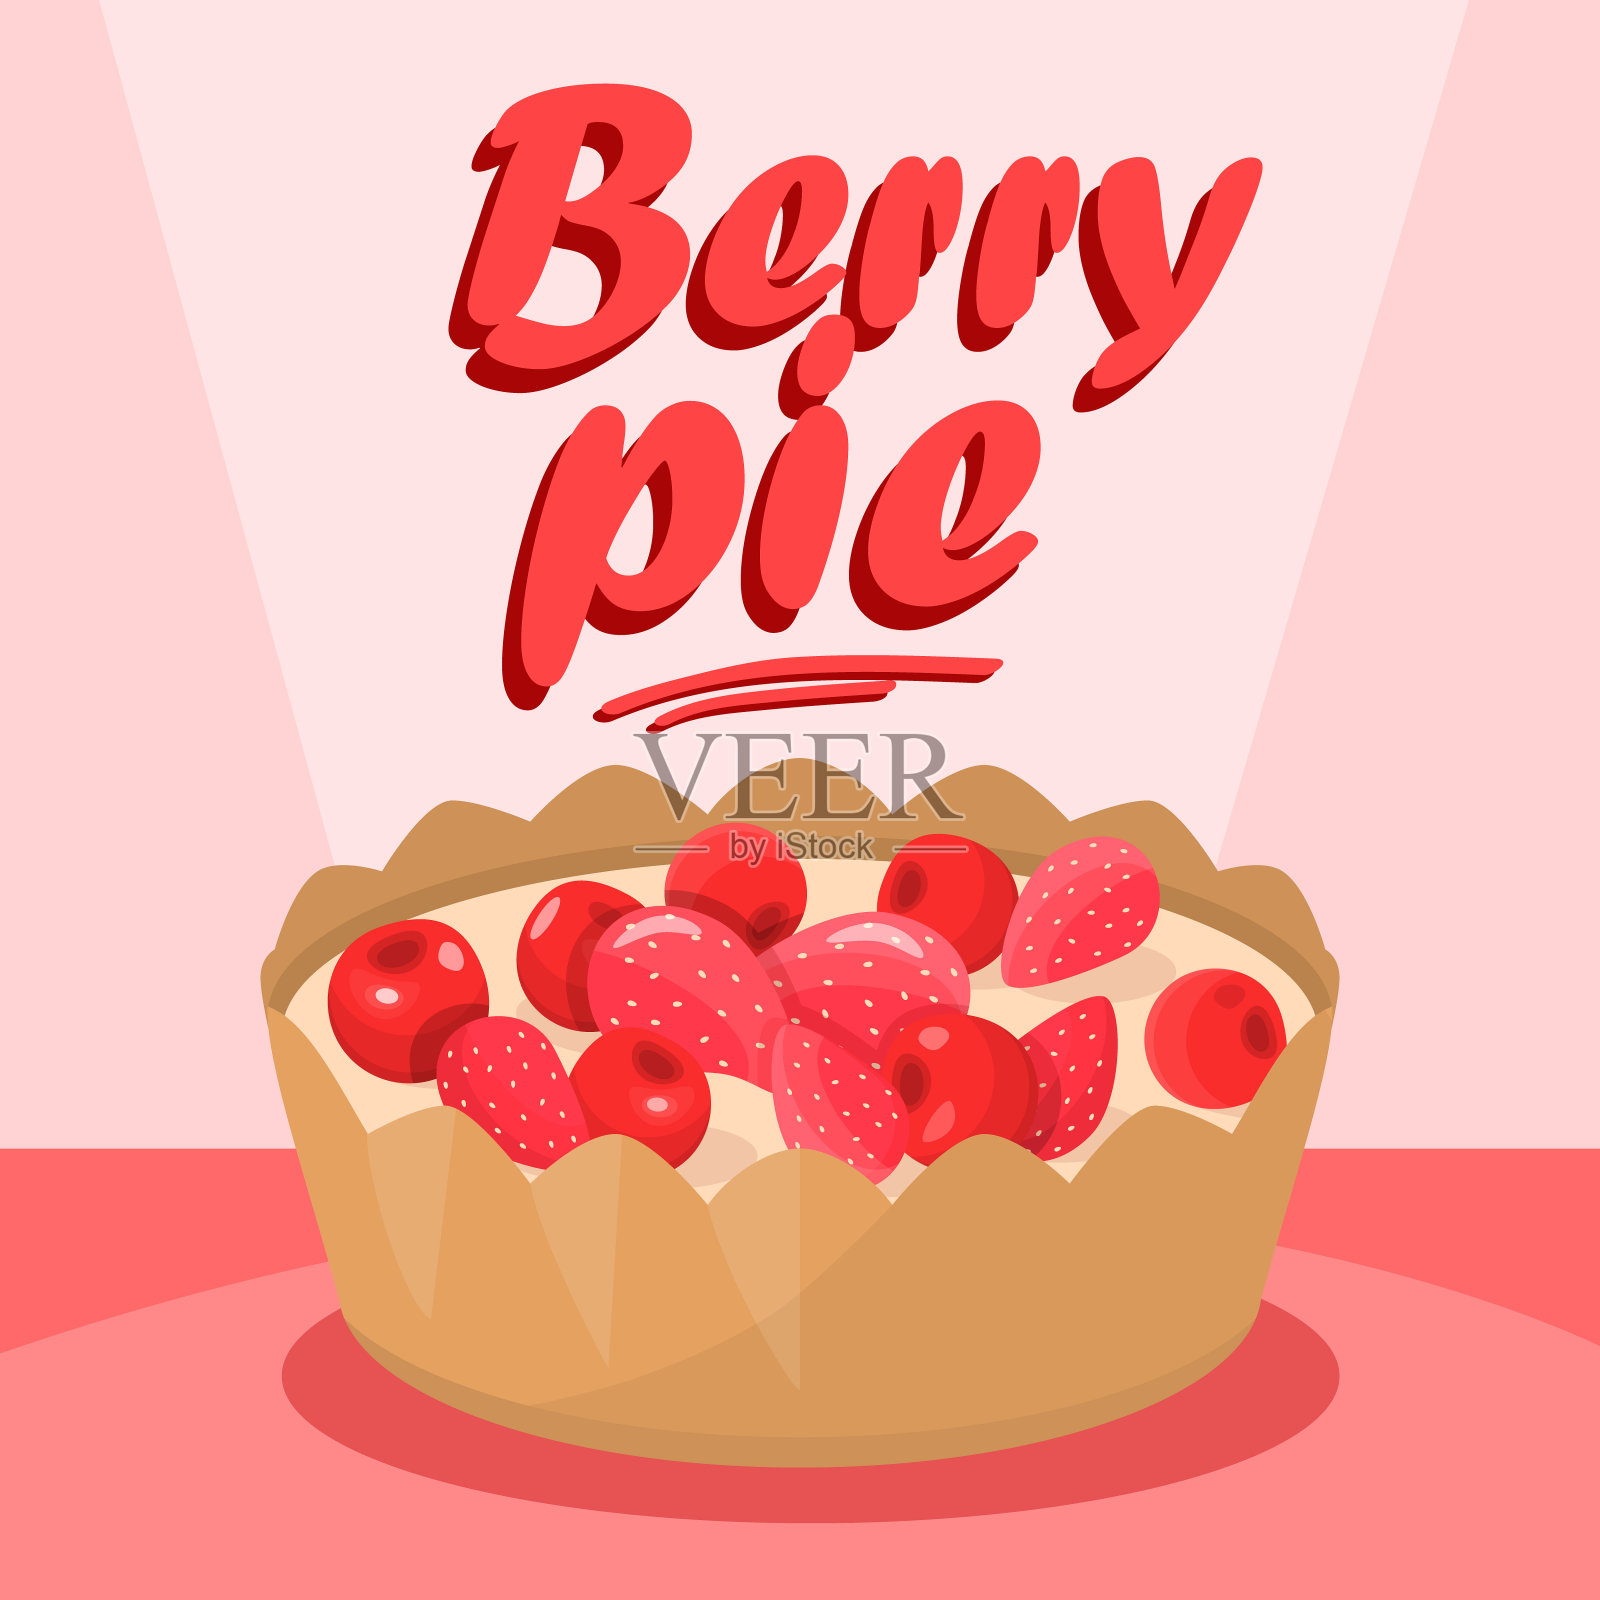 美味莓派卡通社交媒体横幅插画图片素材